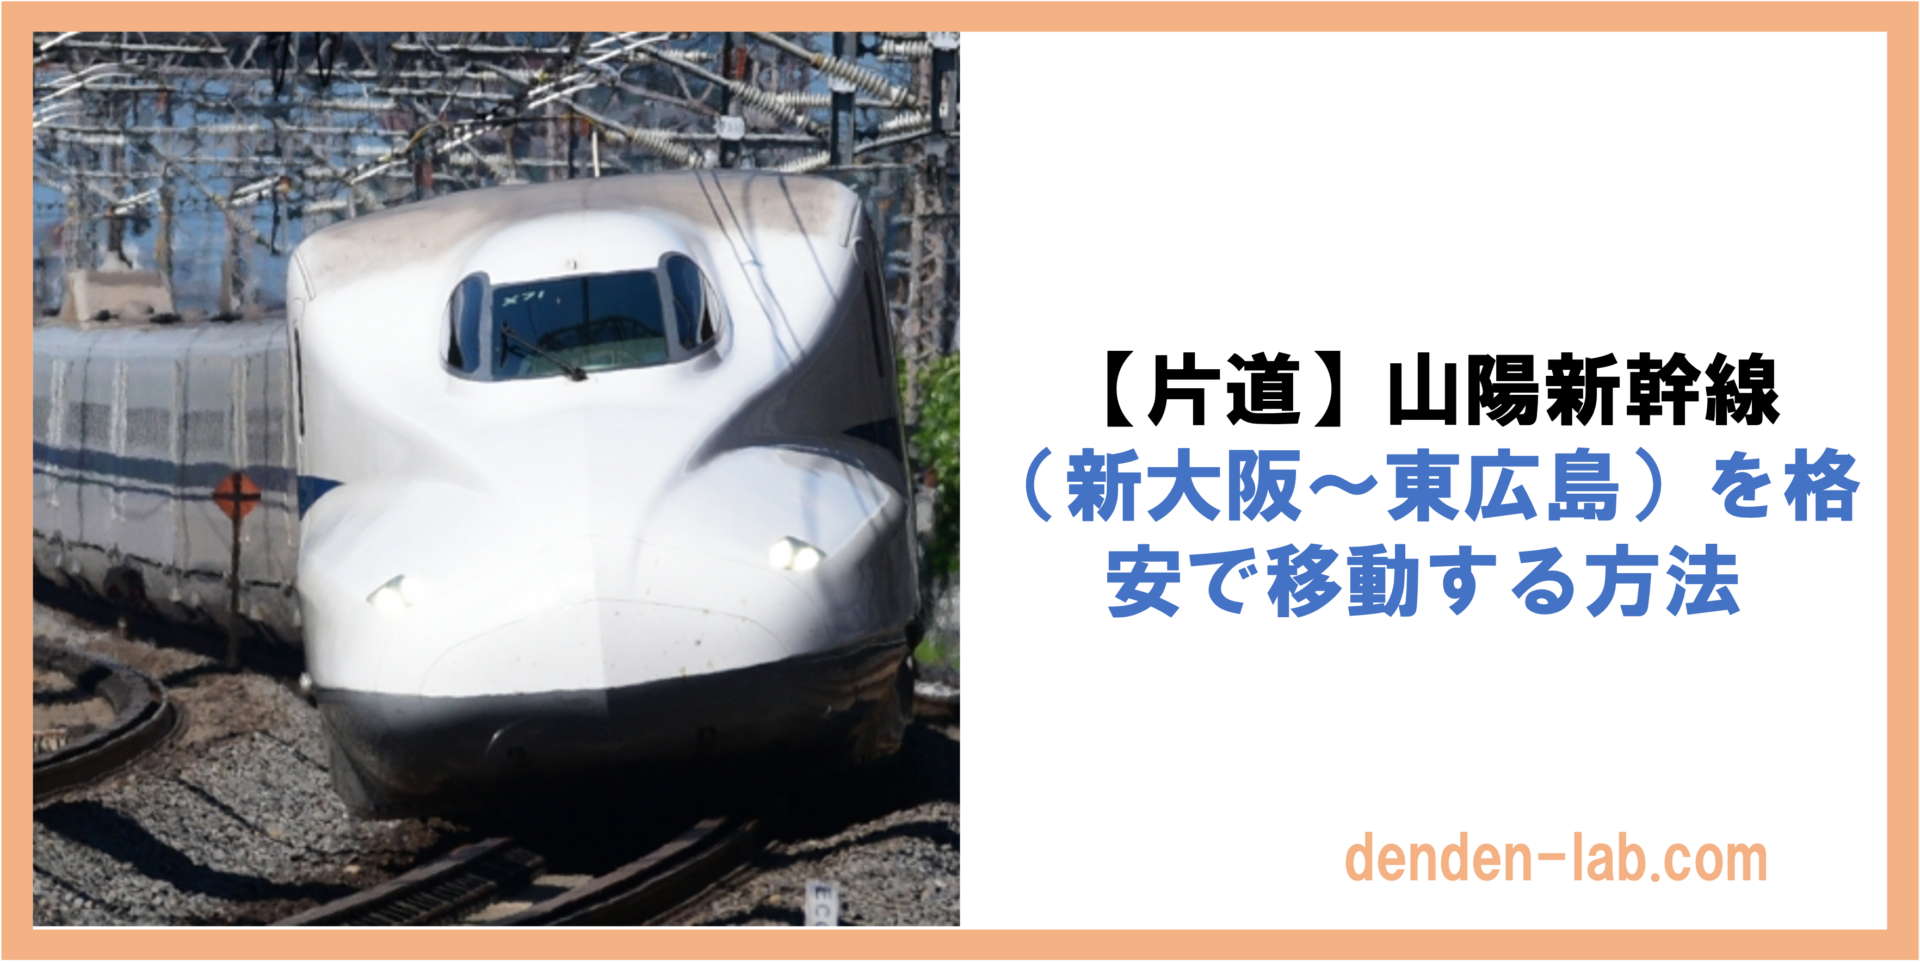 【片道】山陽新幹線 （新大阪〜東広島）を格安で移動する方法